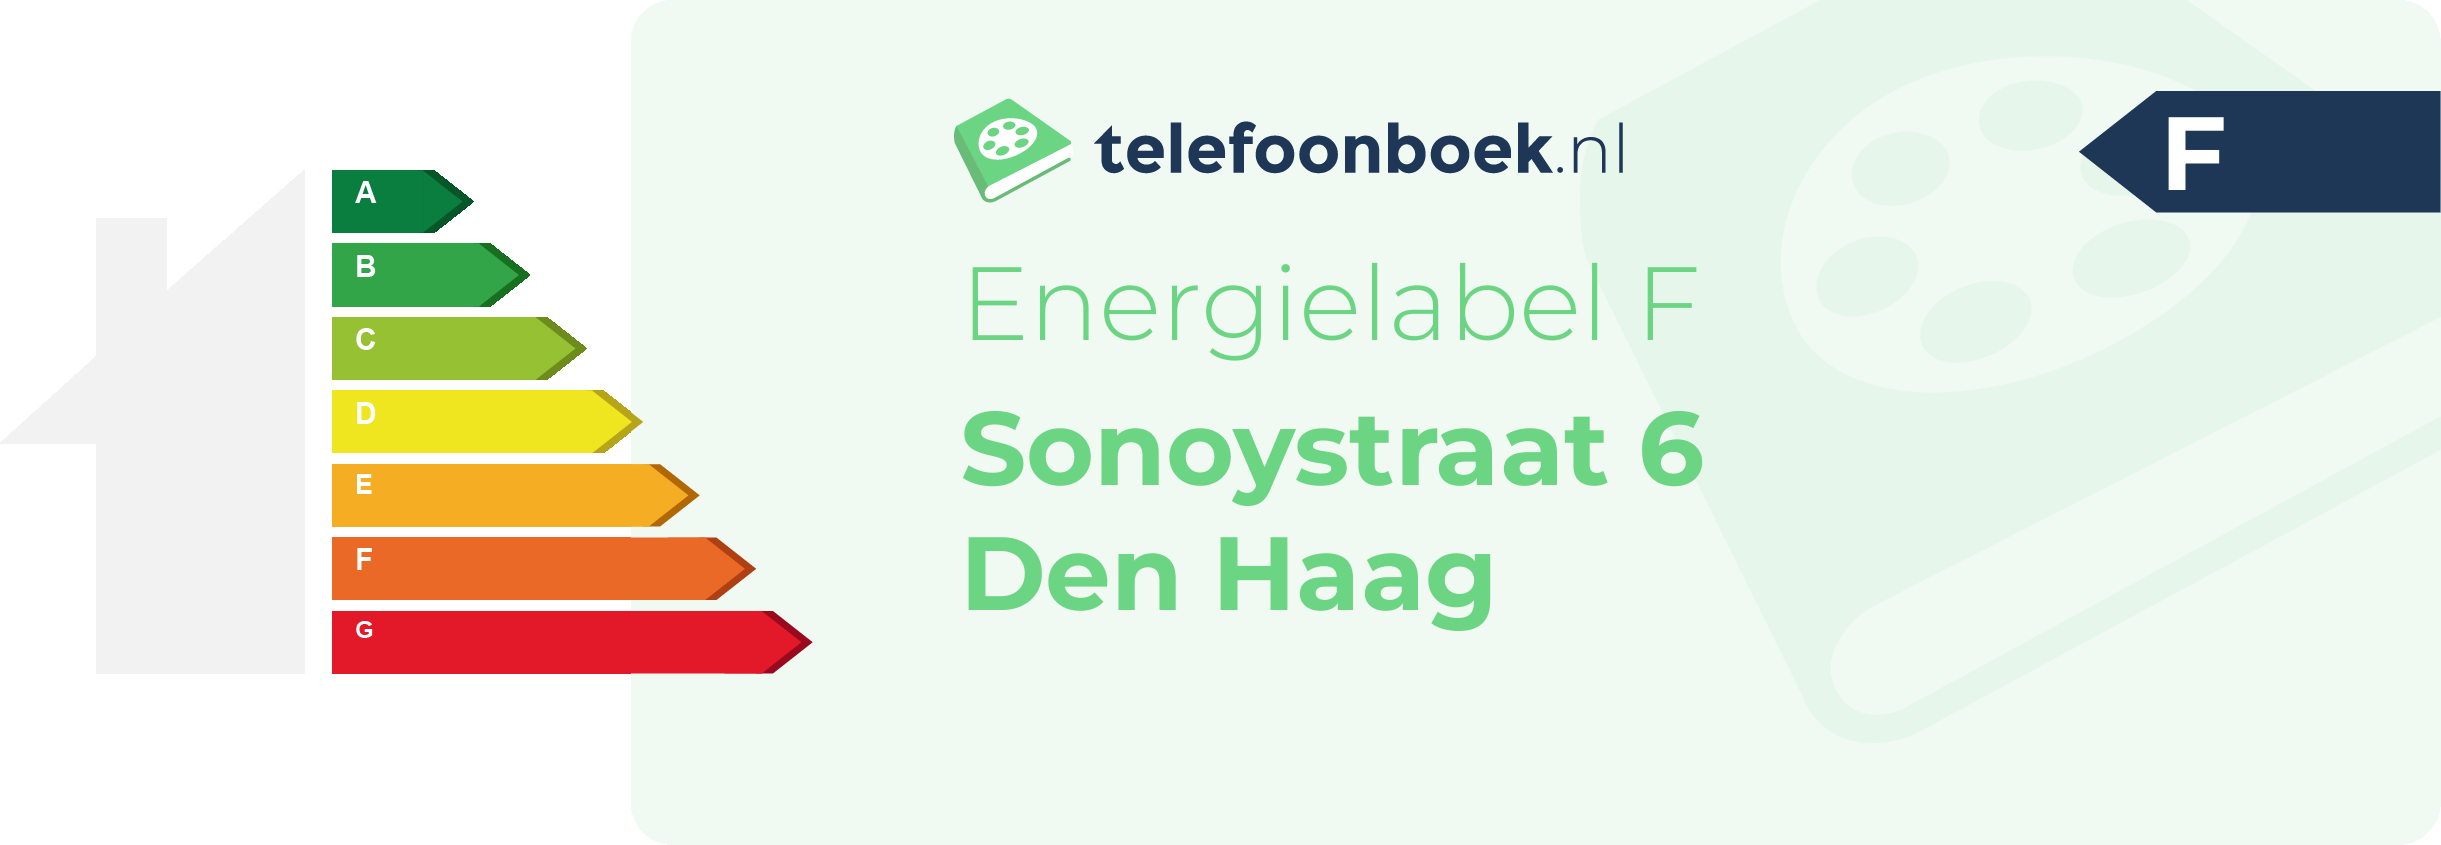 Energielabel Sonoystraat 6 Den Haag